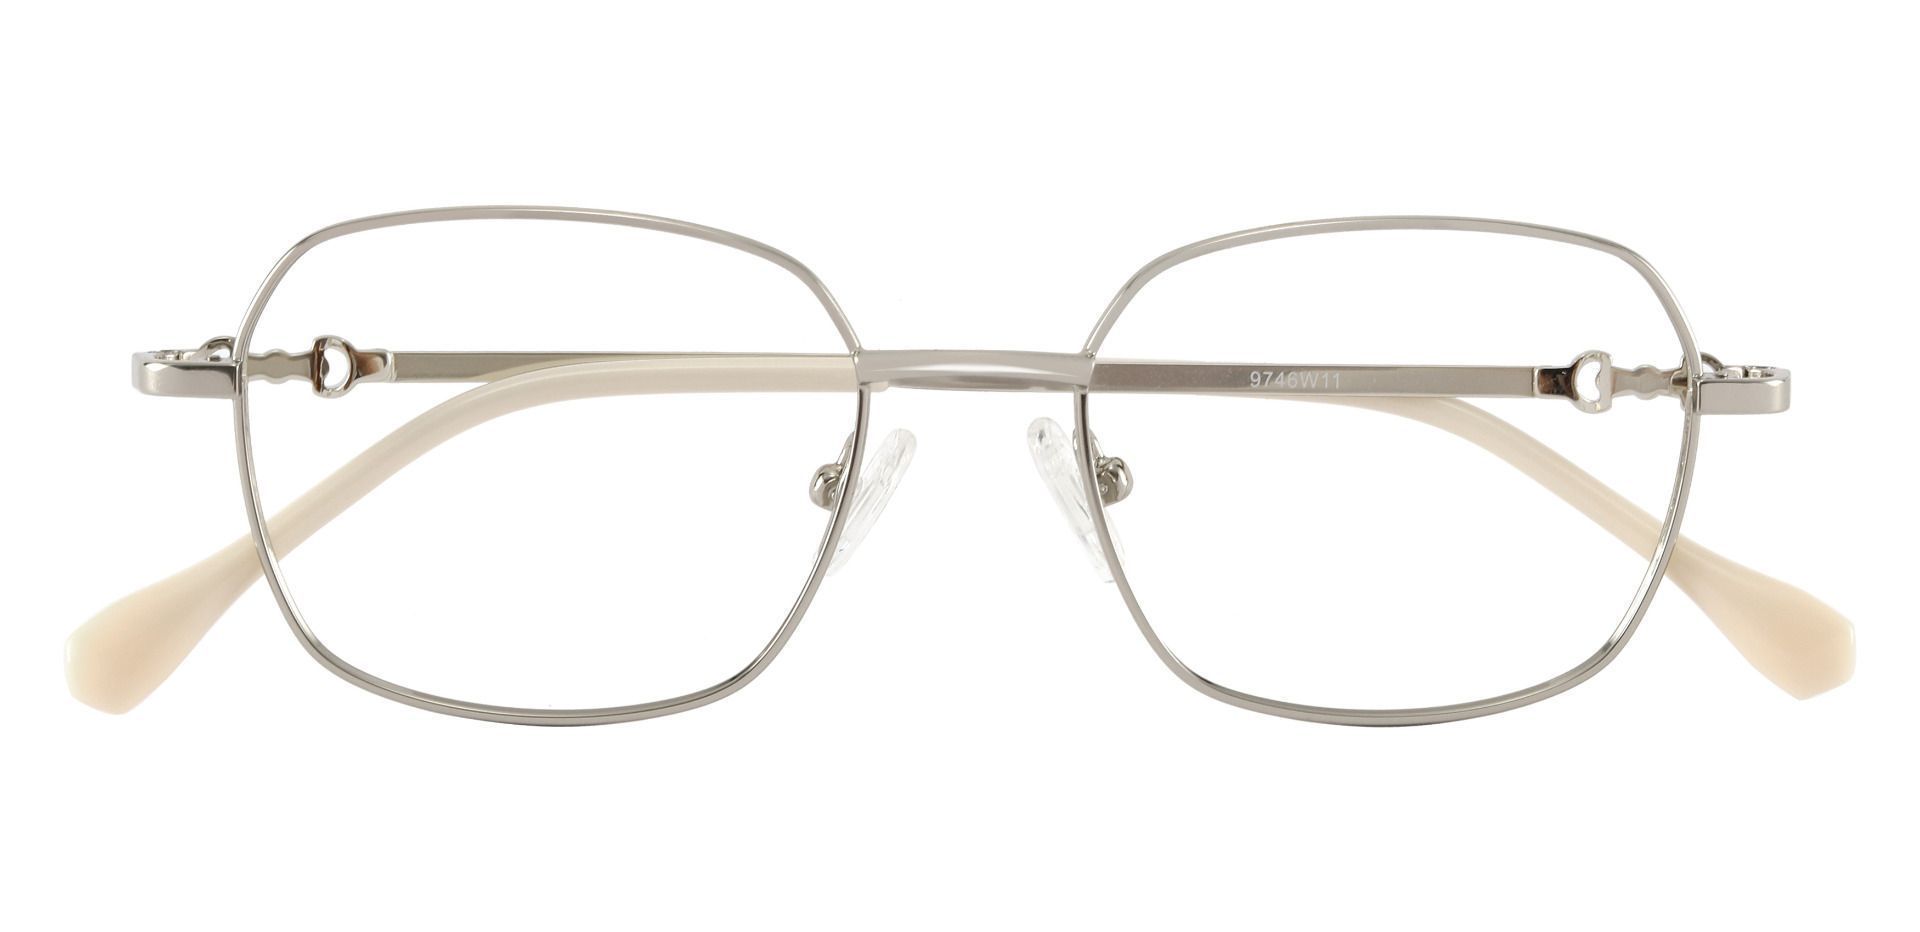 Averill Geometric Prescription Glasses - Silver